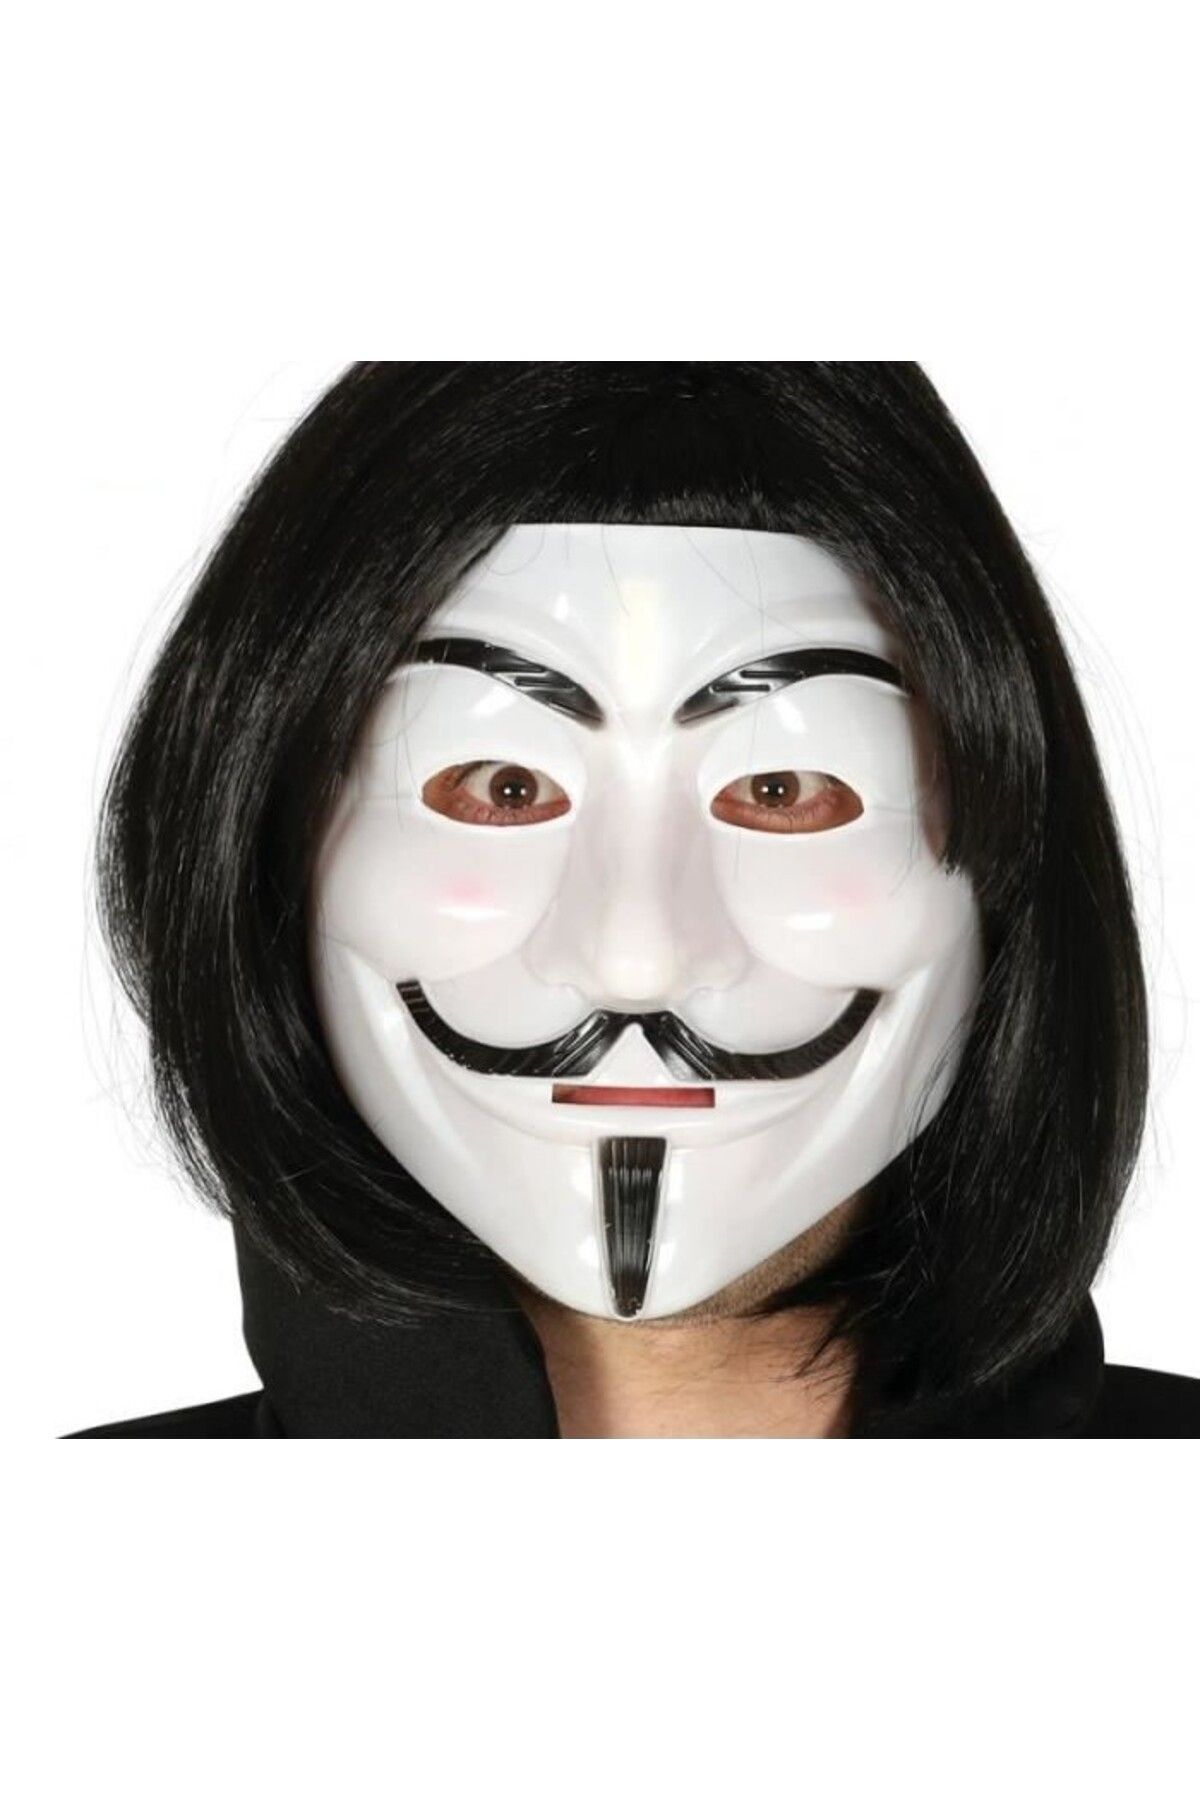 MAGAZZINO DELLAMORE Siyah Renk Takma Kısa Saç ve V For Vendetta Maskesi Anonymous Maskesi